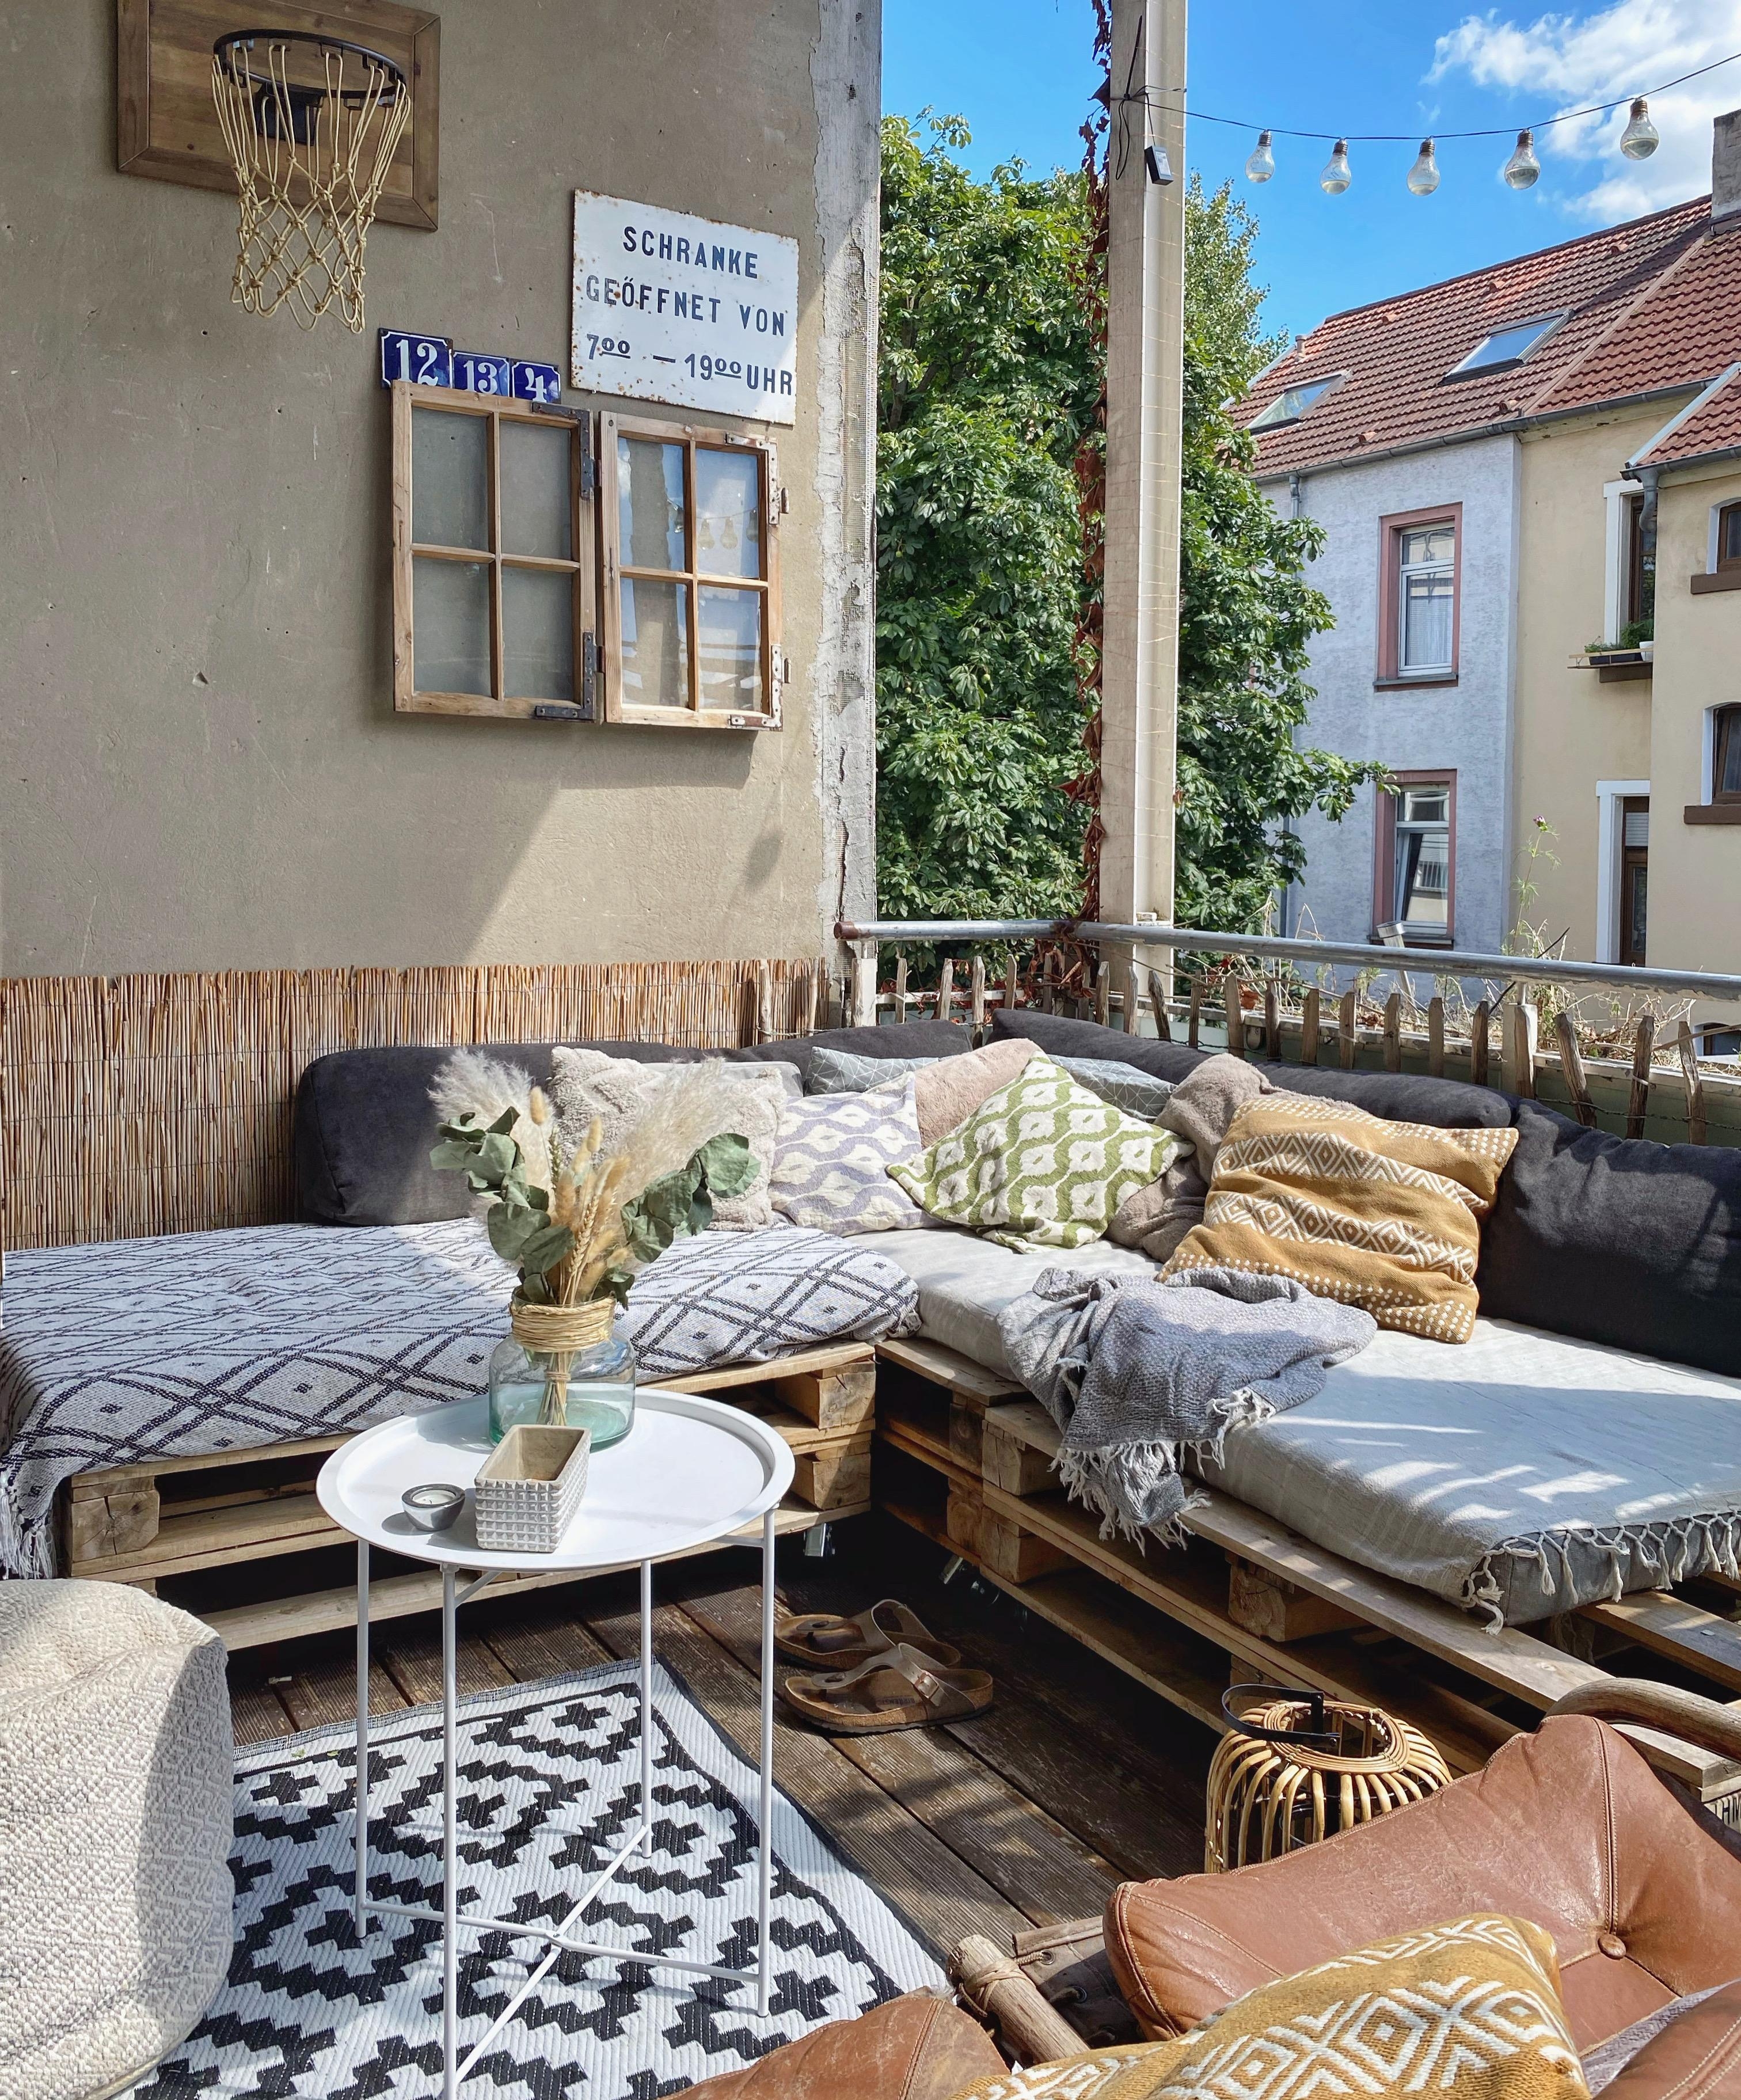 Last summerdays 🤍 #summer #balkonien #couchstyle #couchmagazin #interior #altbau #altbauliebe 